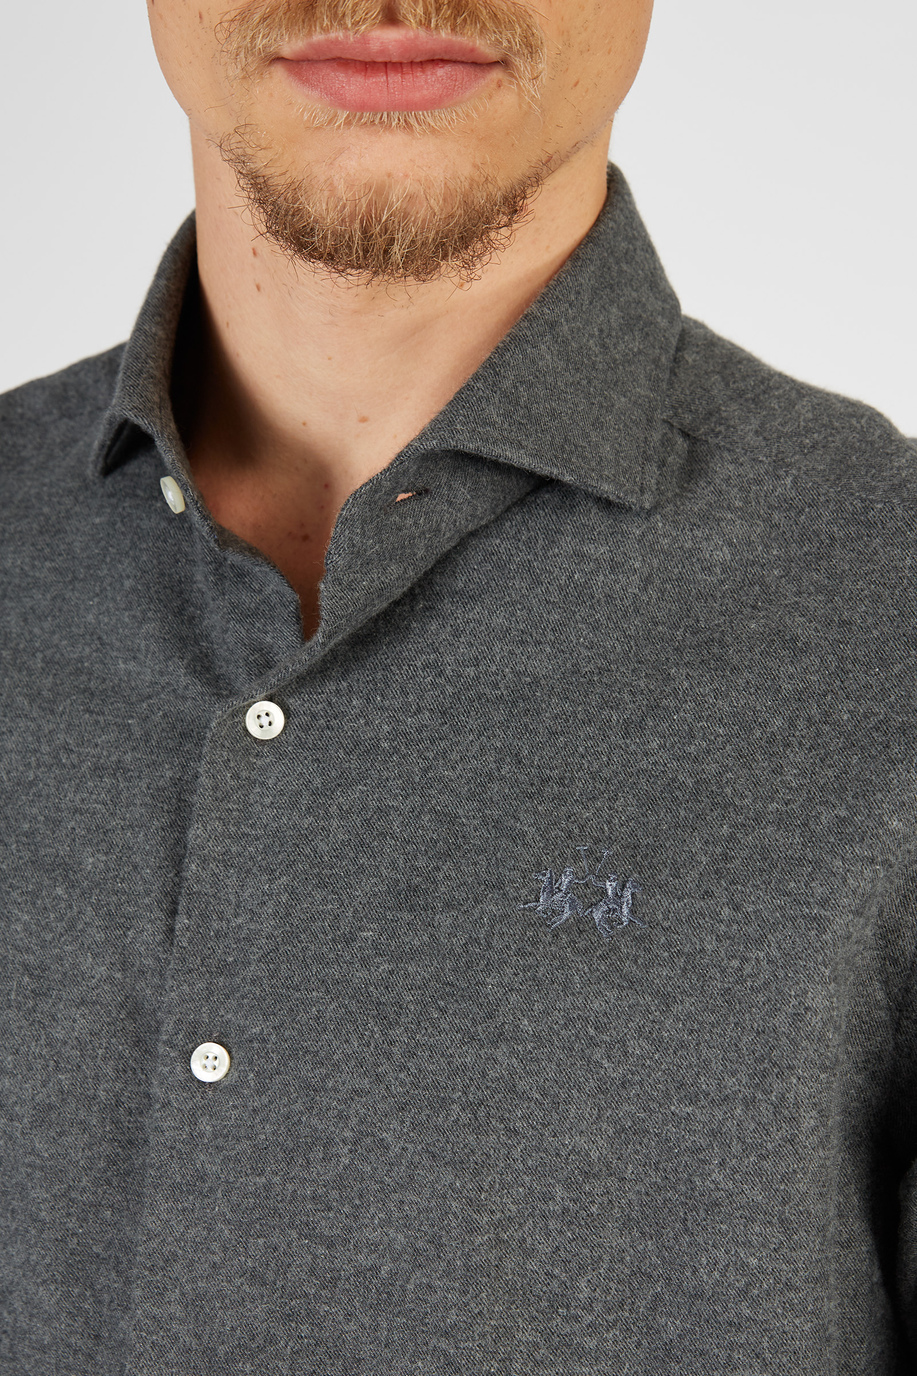 Blue Ribbon Herrenhemd mit langen Ärmeln aus Flanell Comfort Fit - Unsere Favoriten für ihn | La Martina - Official Online Shop